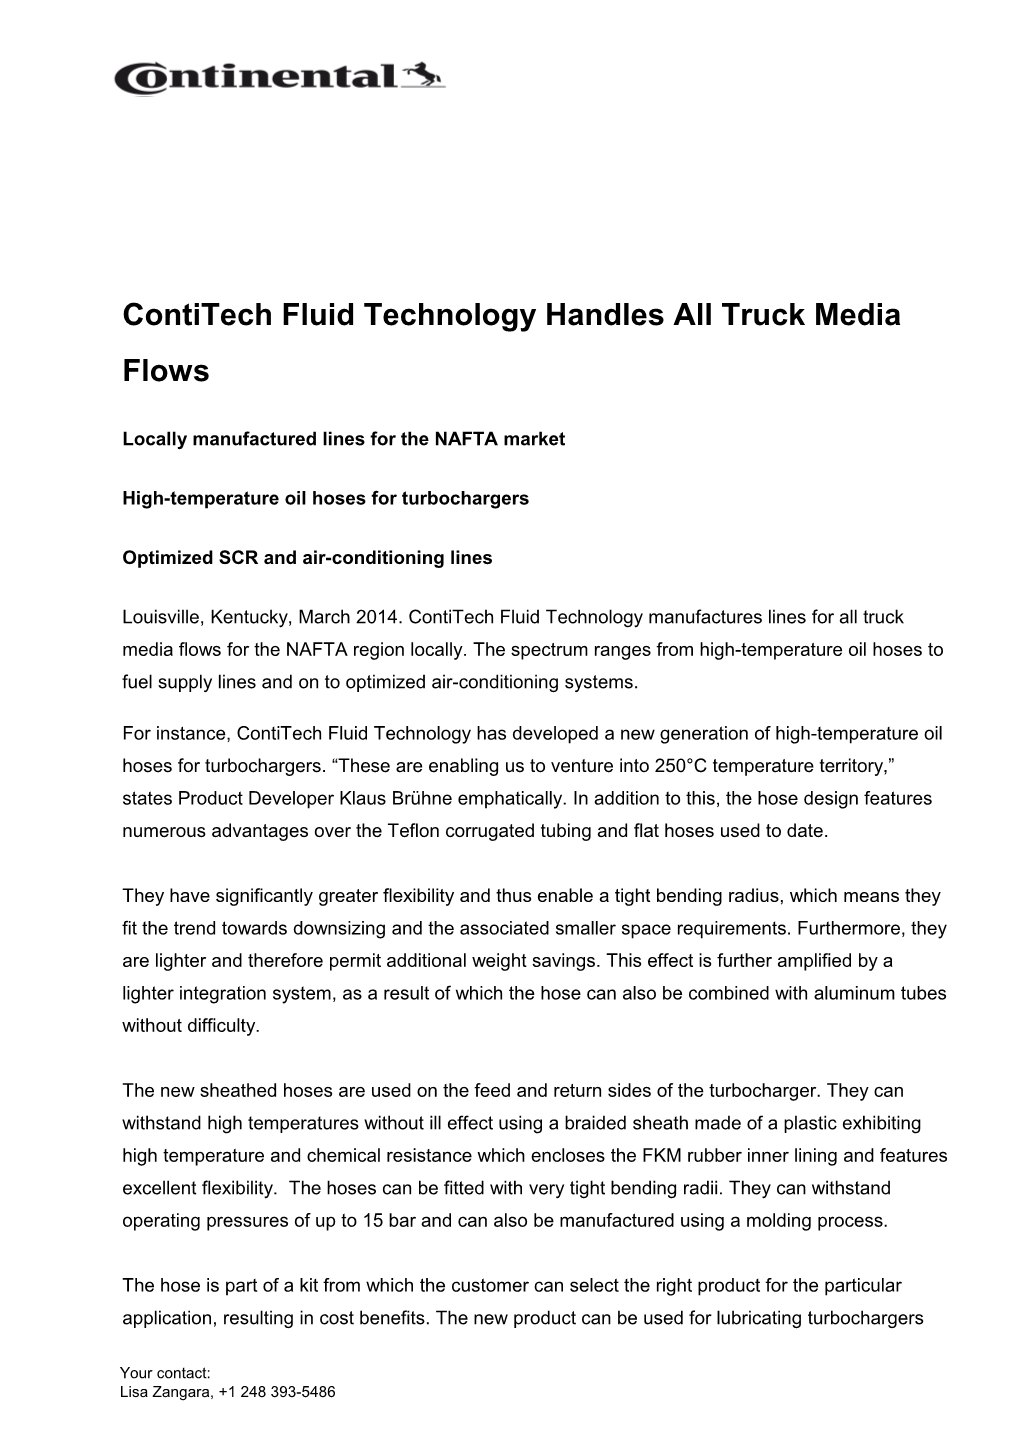 Contitech Fluid Technology Handles All Truck Media Flows